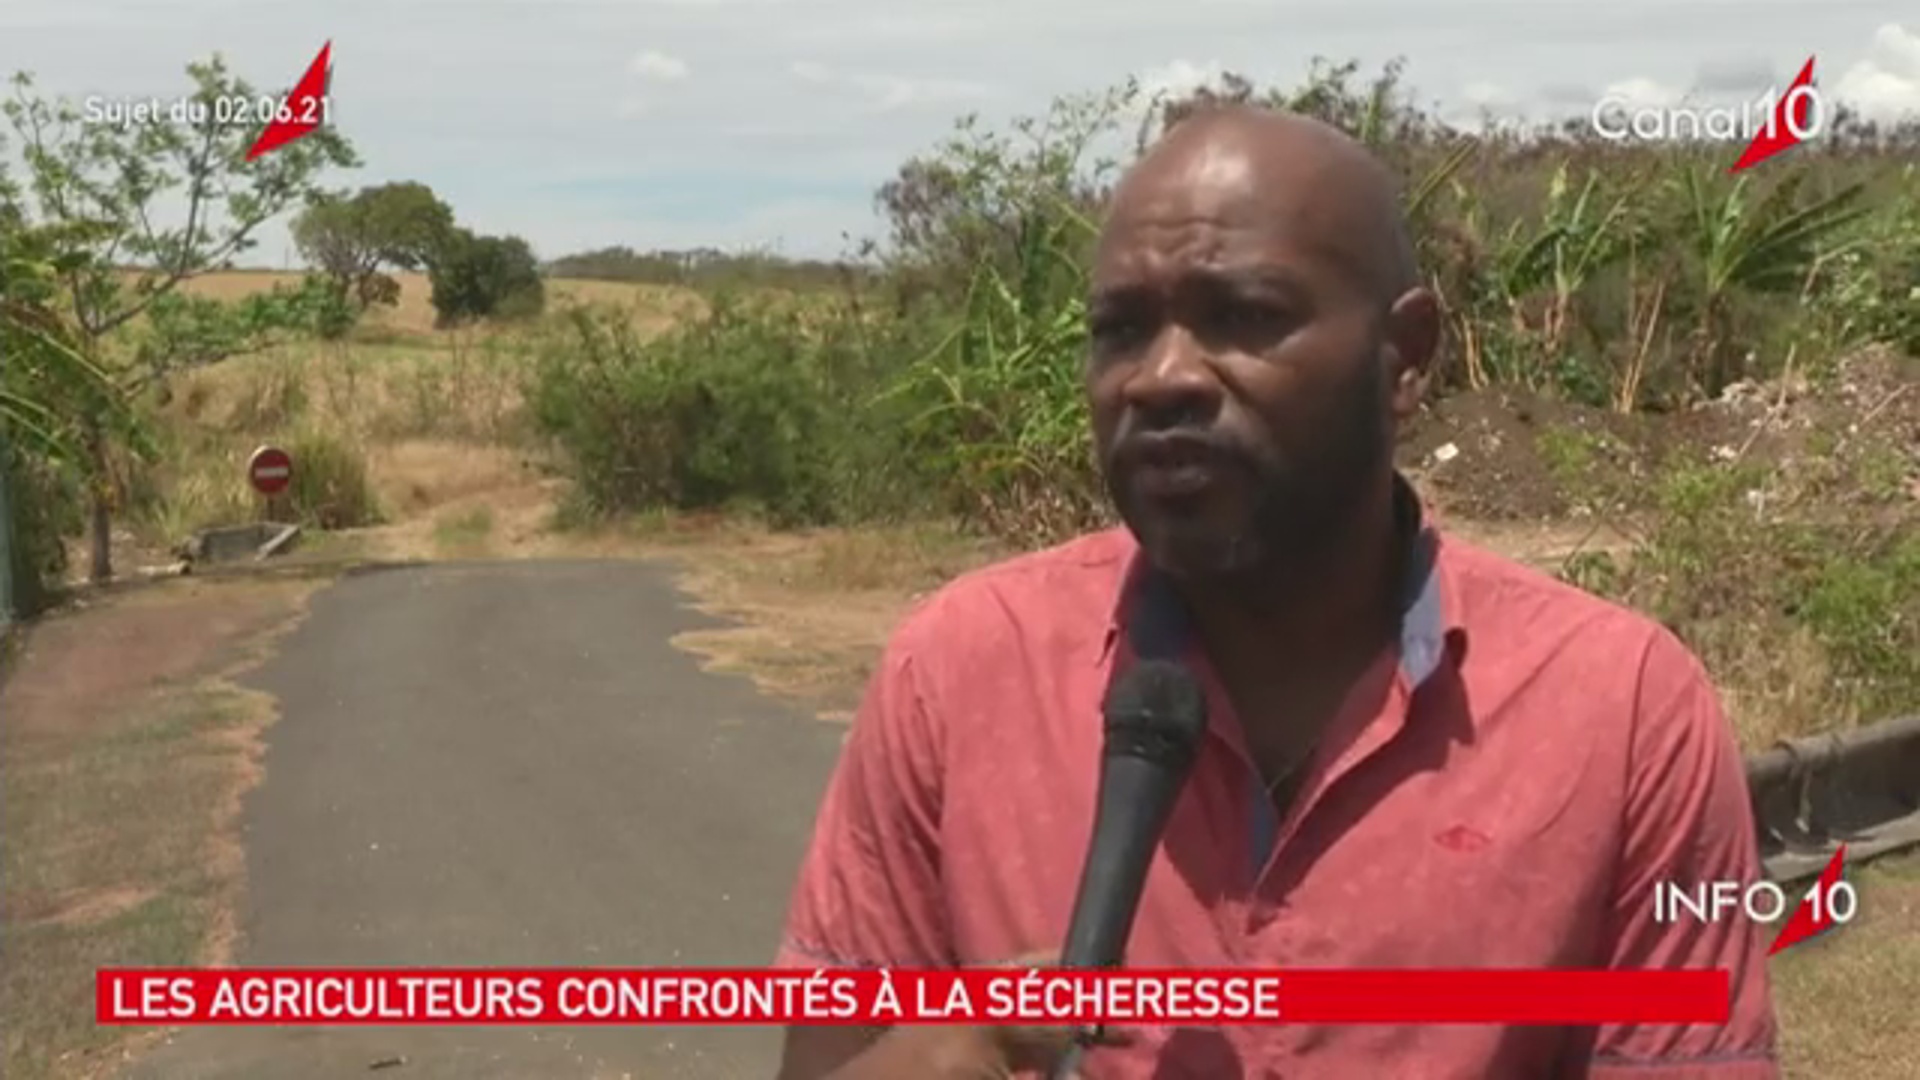 [Vidéo] Onews Guadeloupe. Le Jt de canal 10